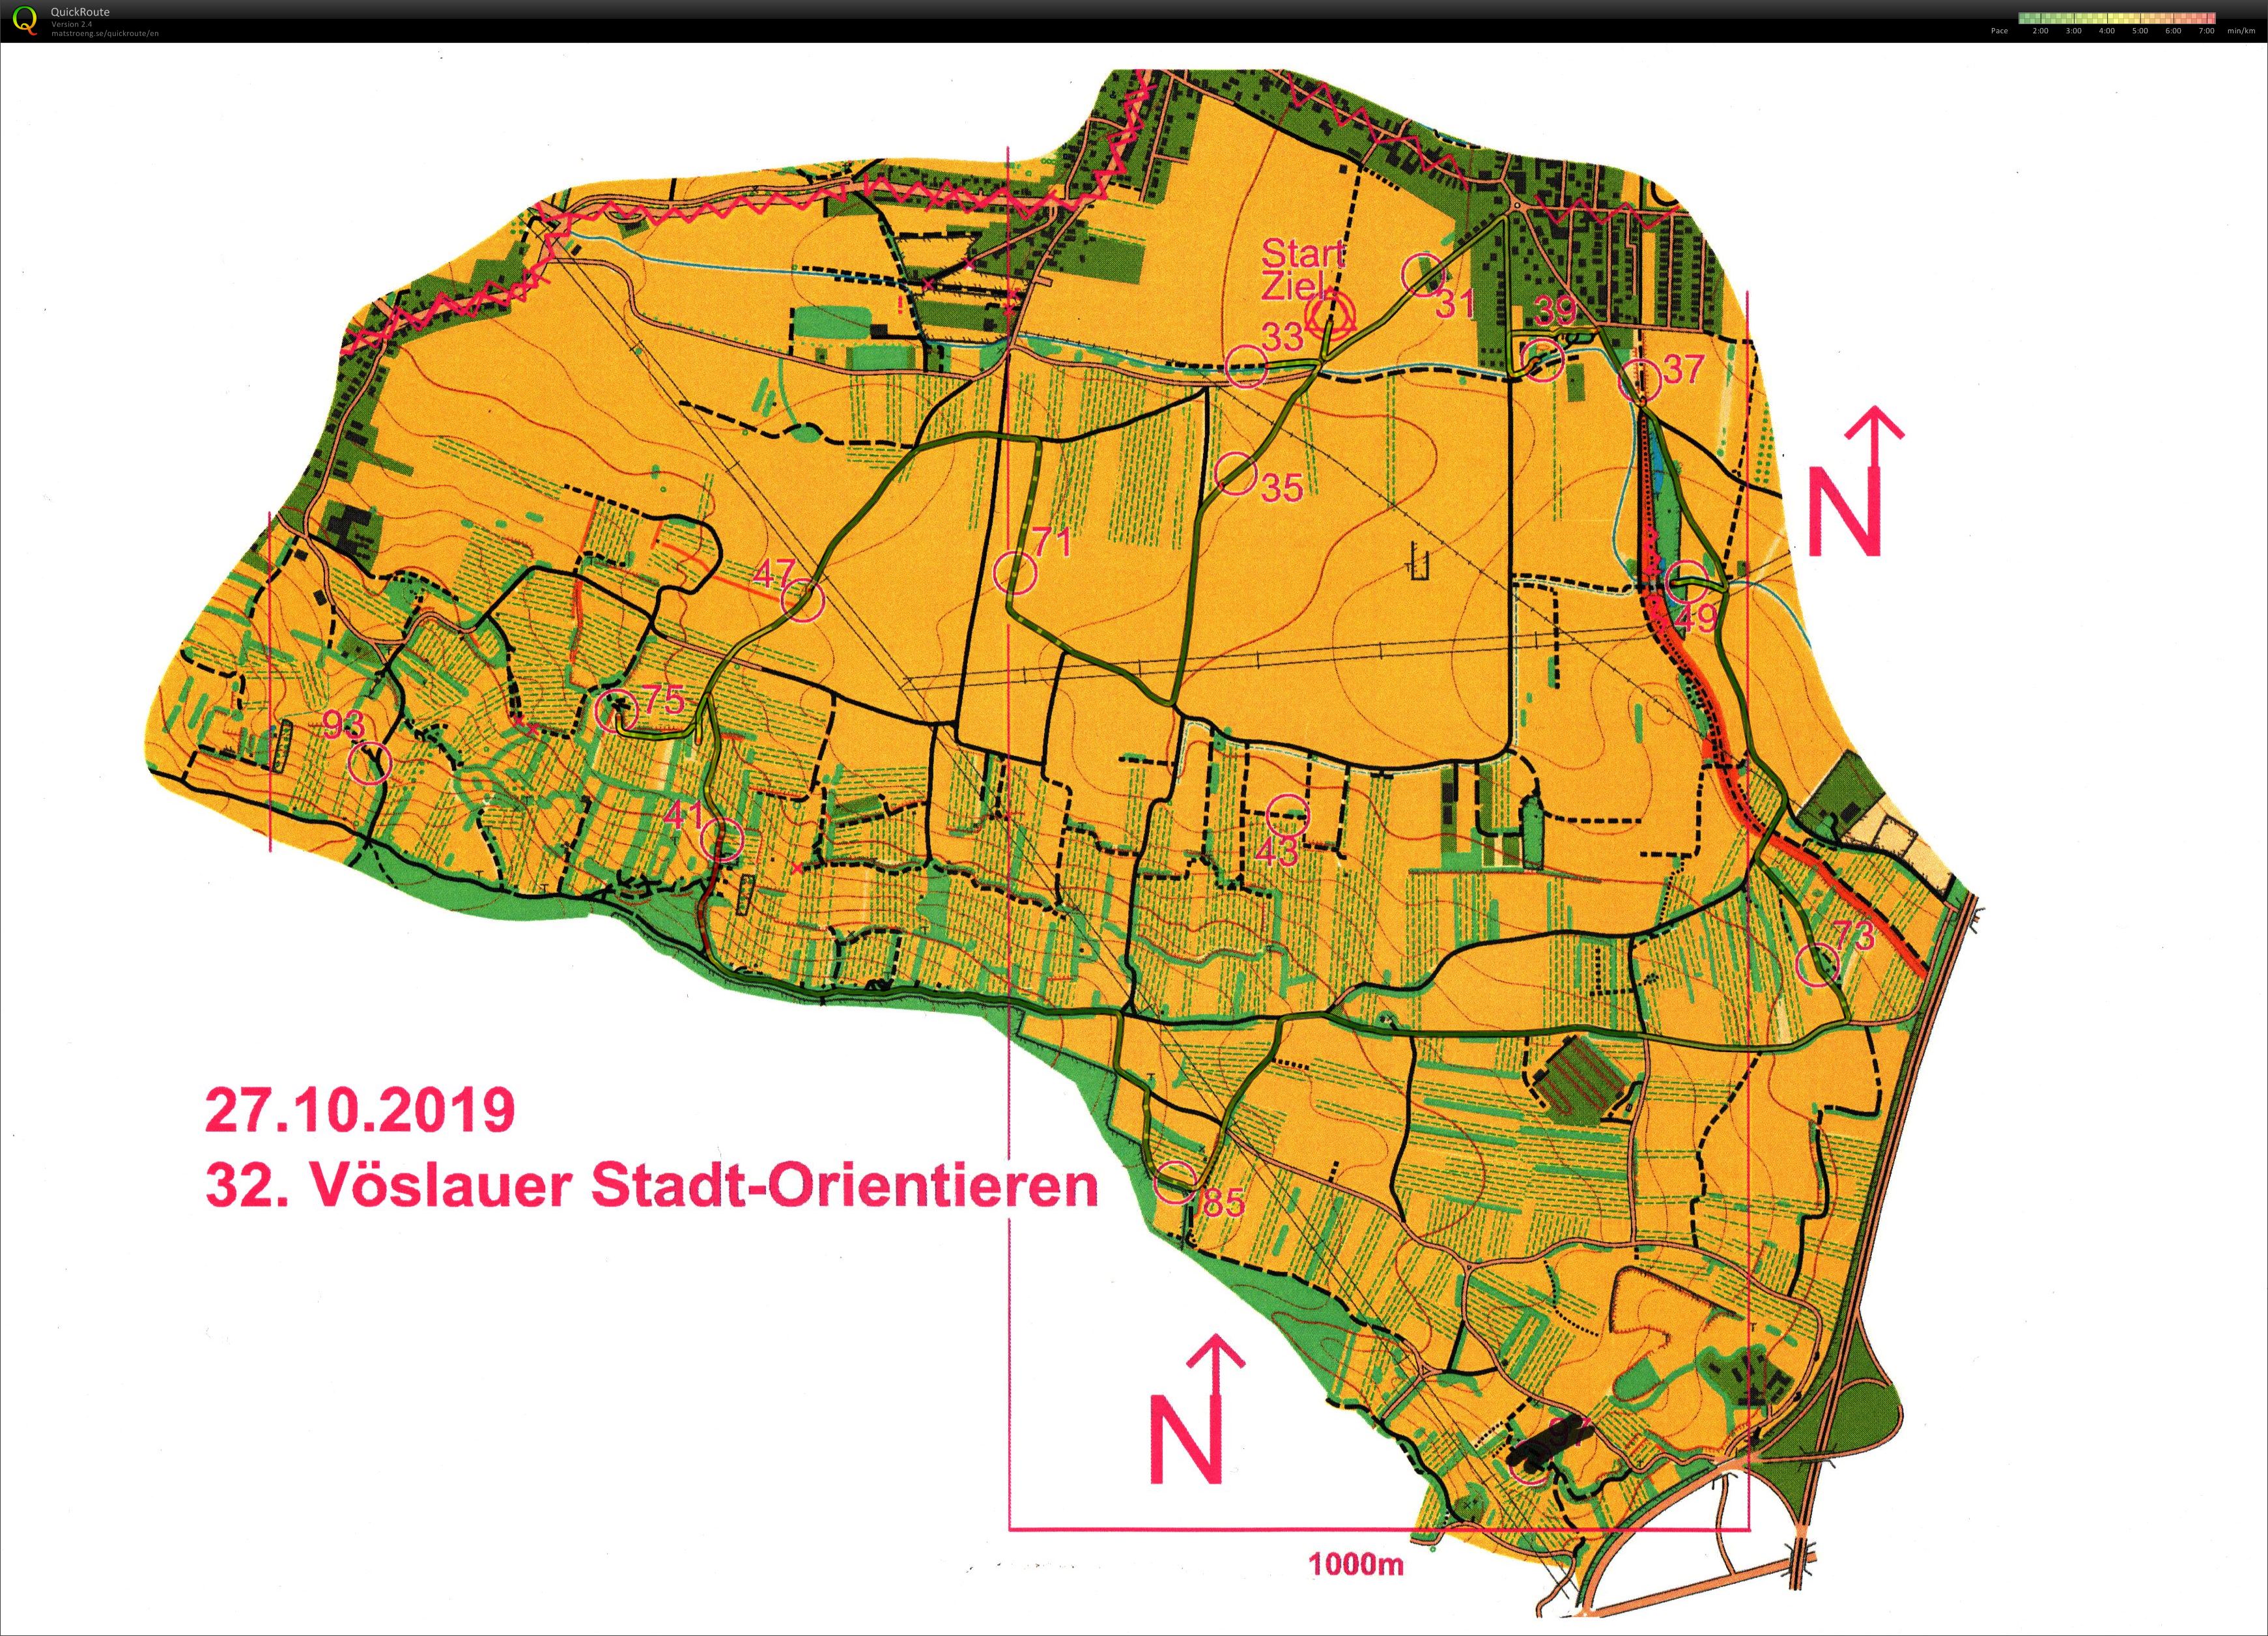 Vöslauer Stadt-Orientieren (27/10/2019)